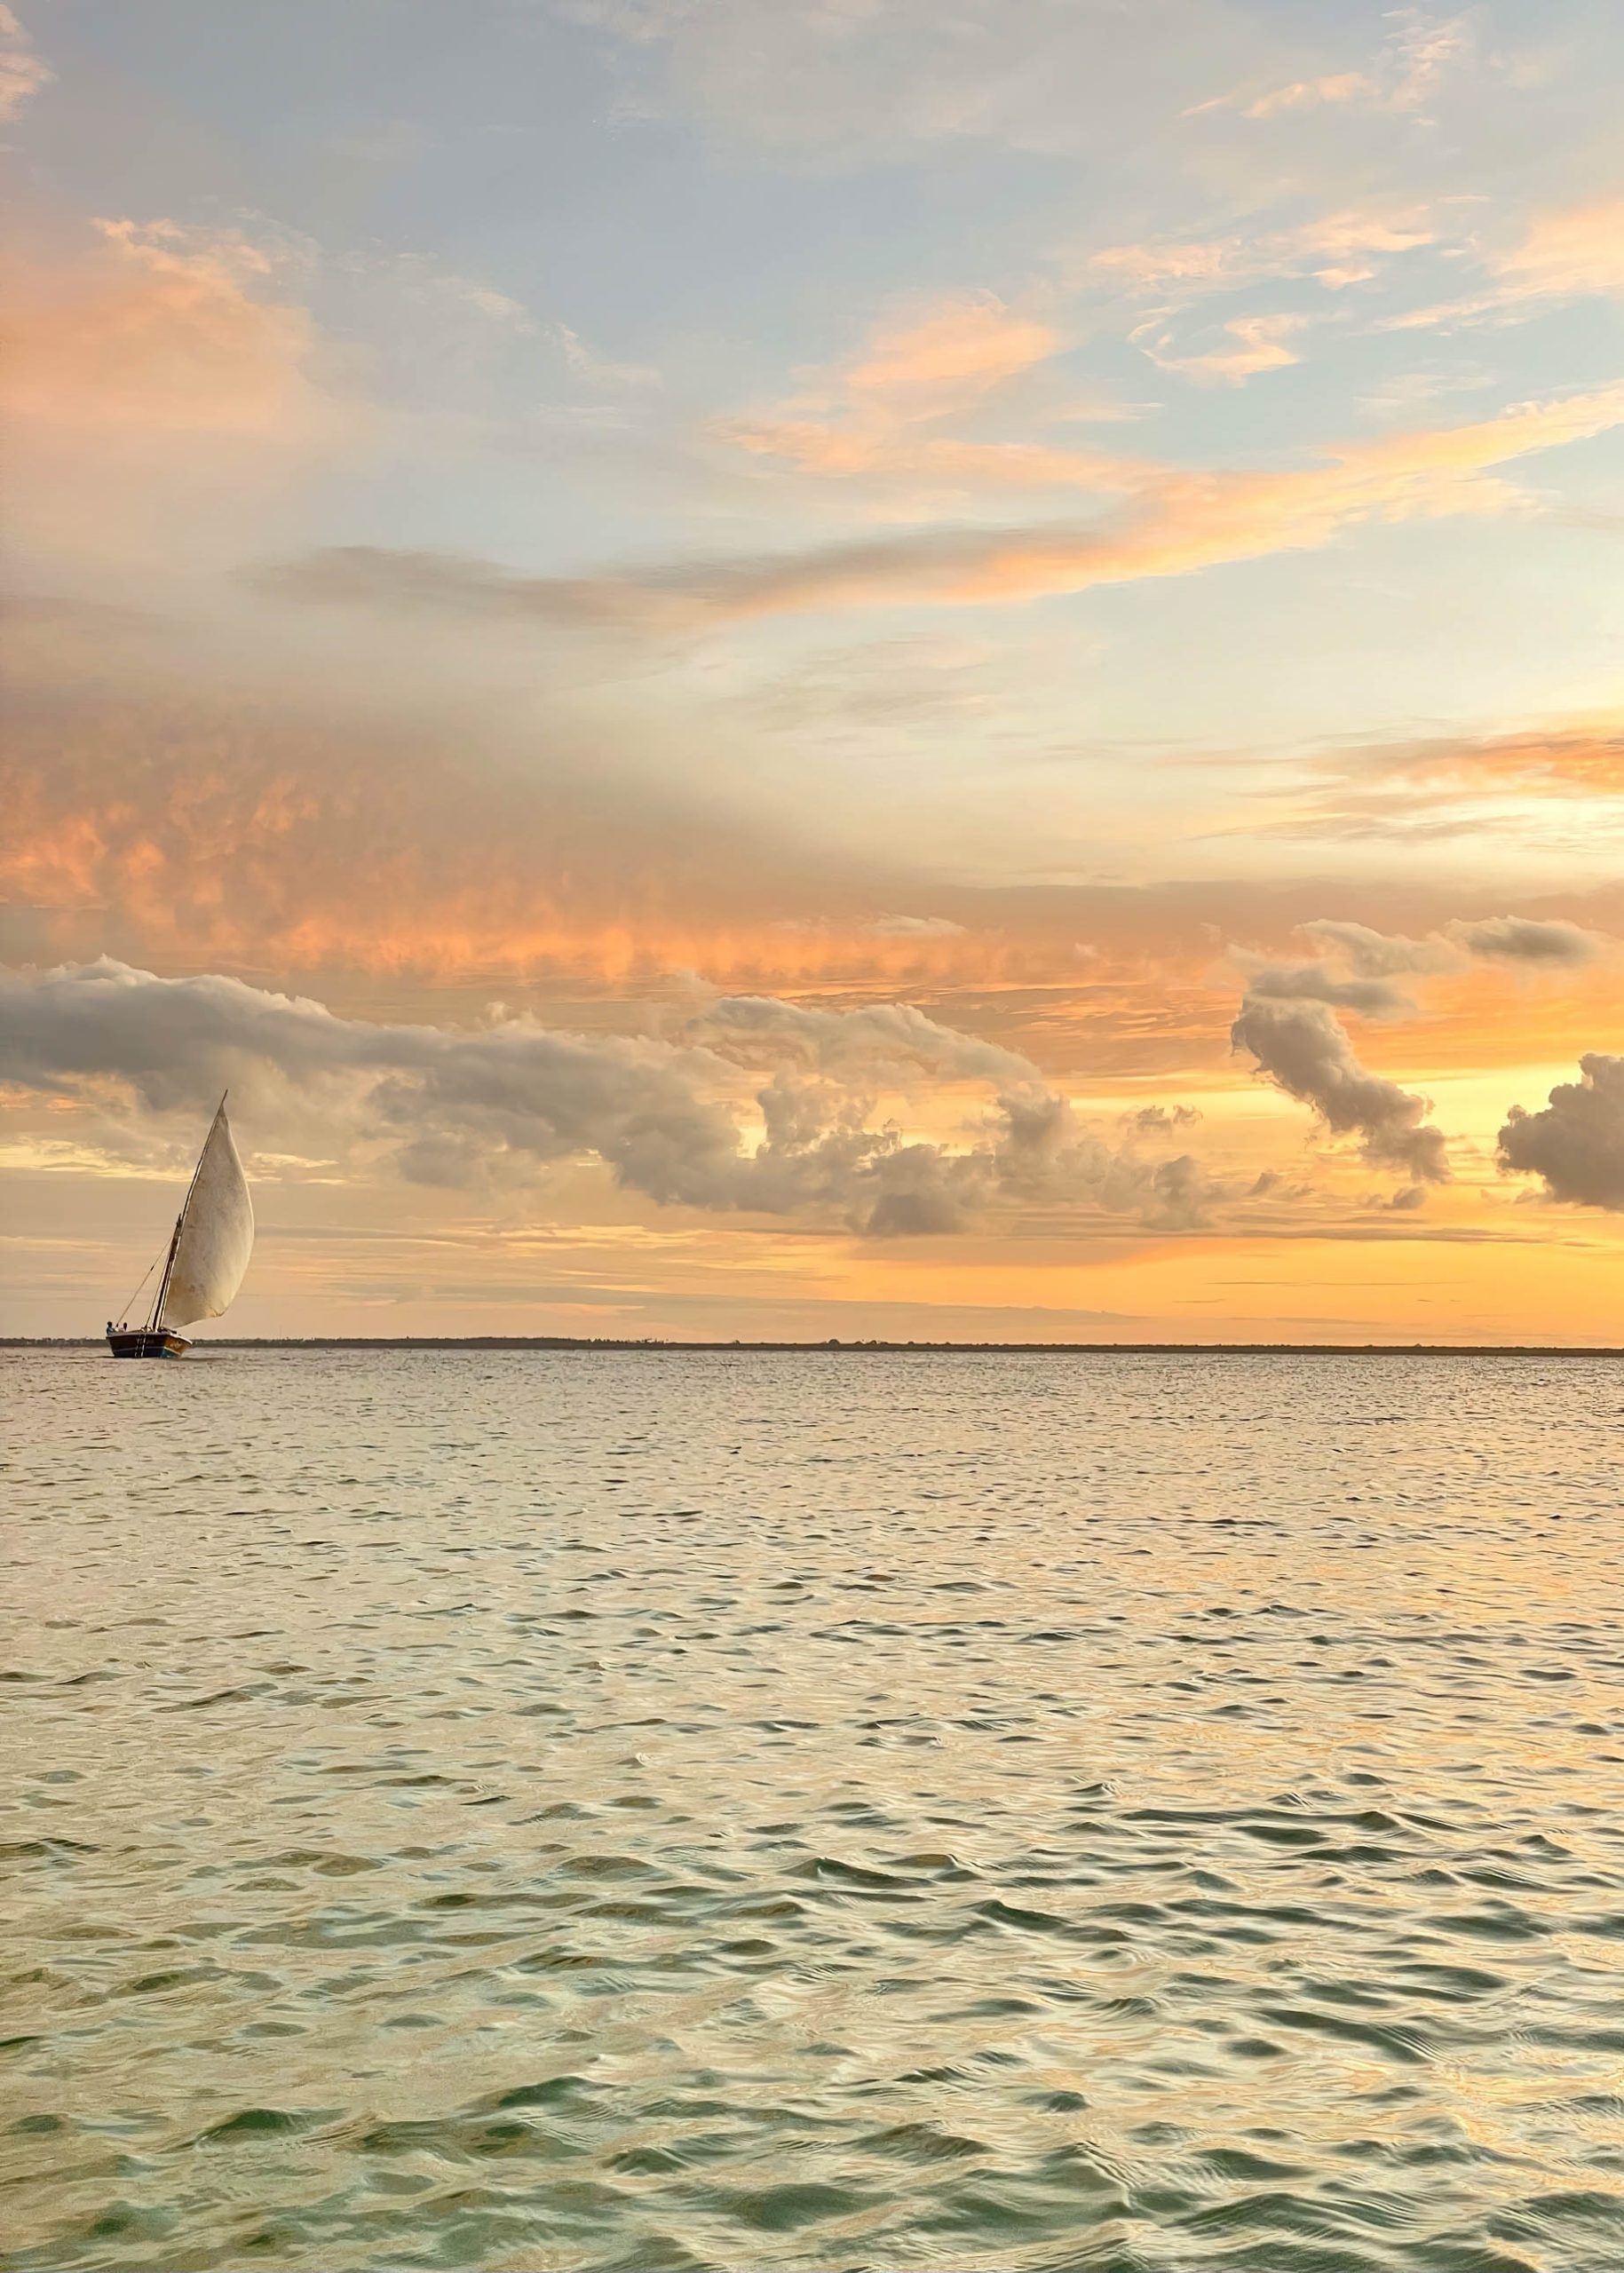 Gold Zanzibar Beach House & Spa Resort – Nungwi, Zanzibar, Tanzania – Ocean Sailboat Sunset